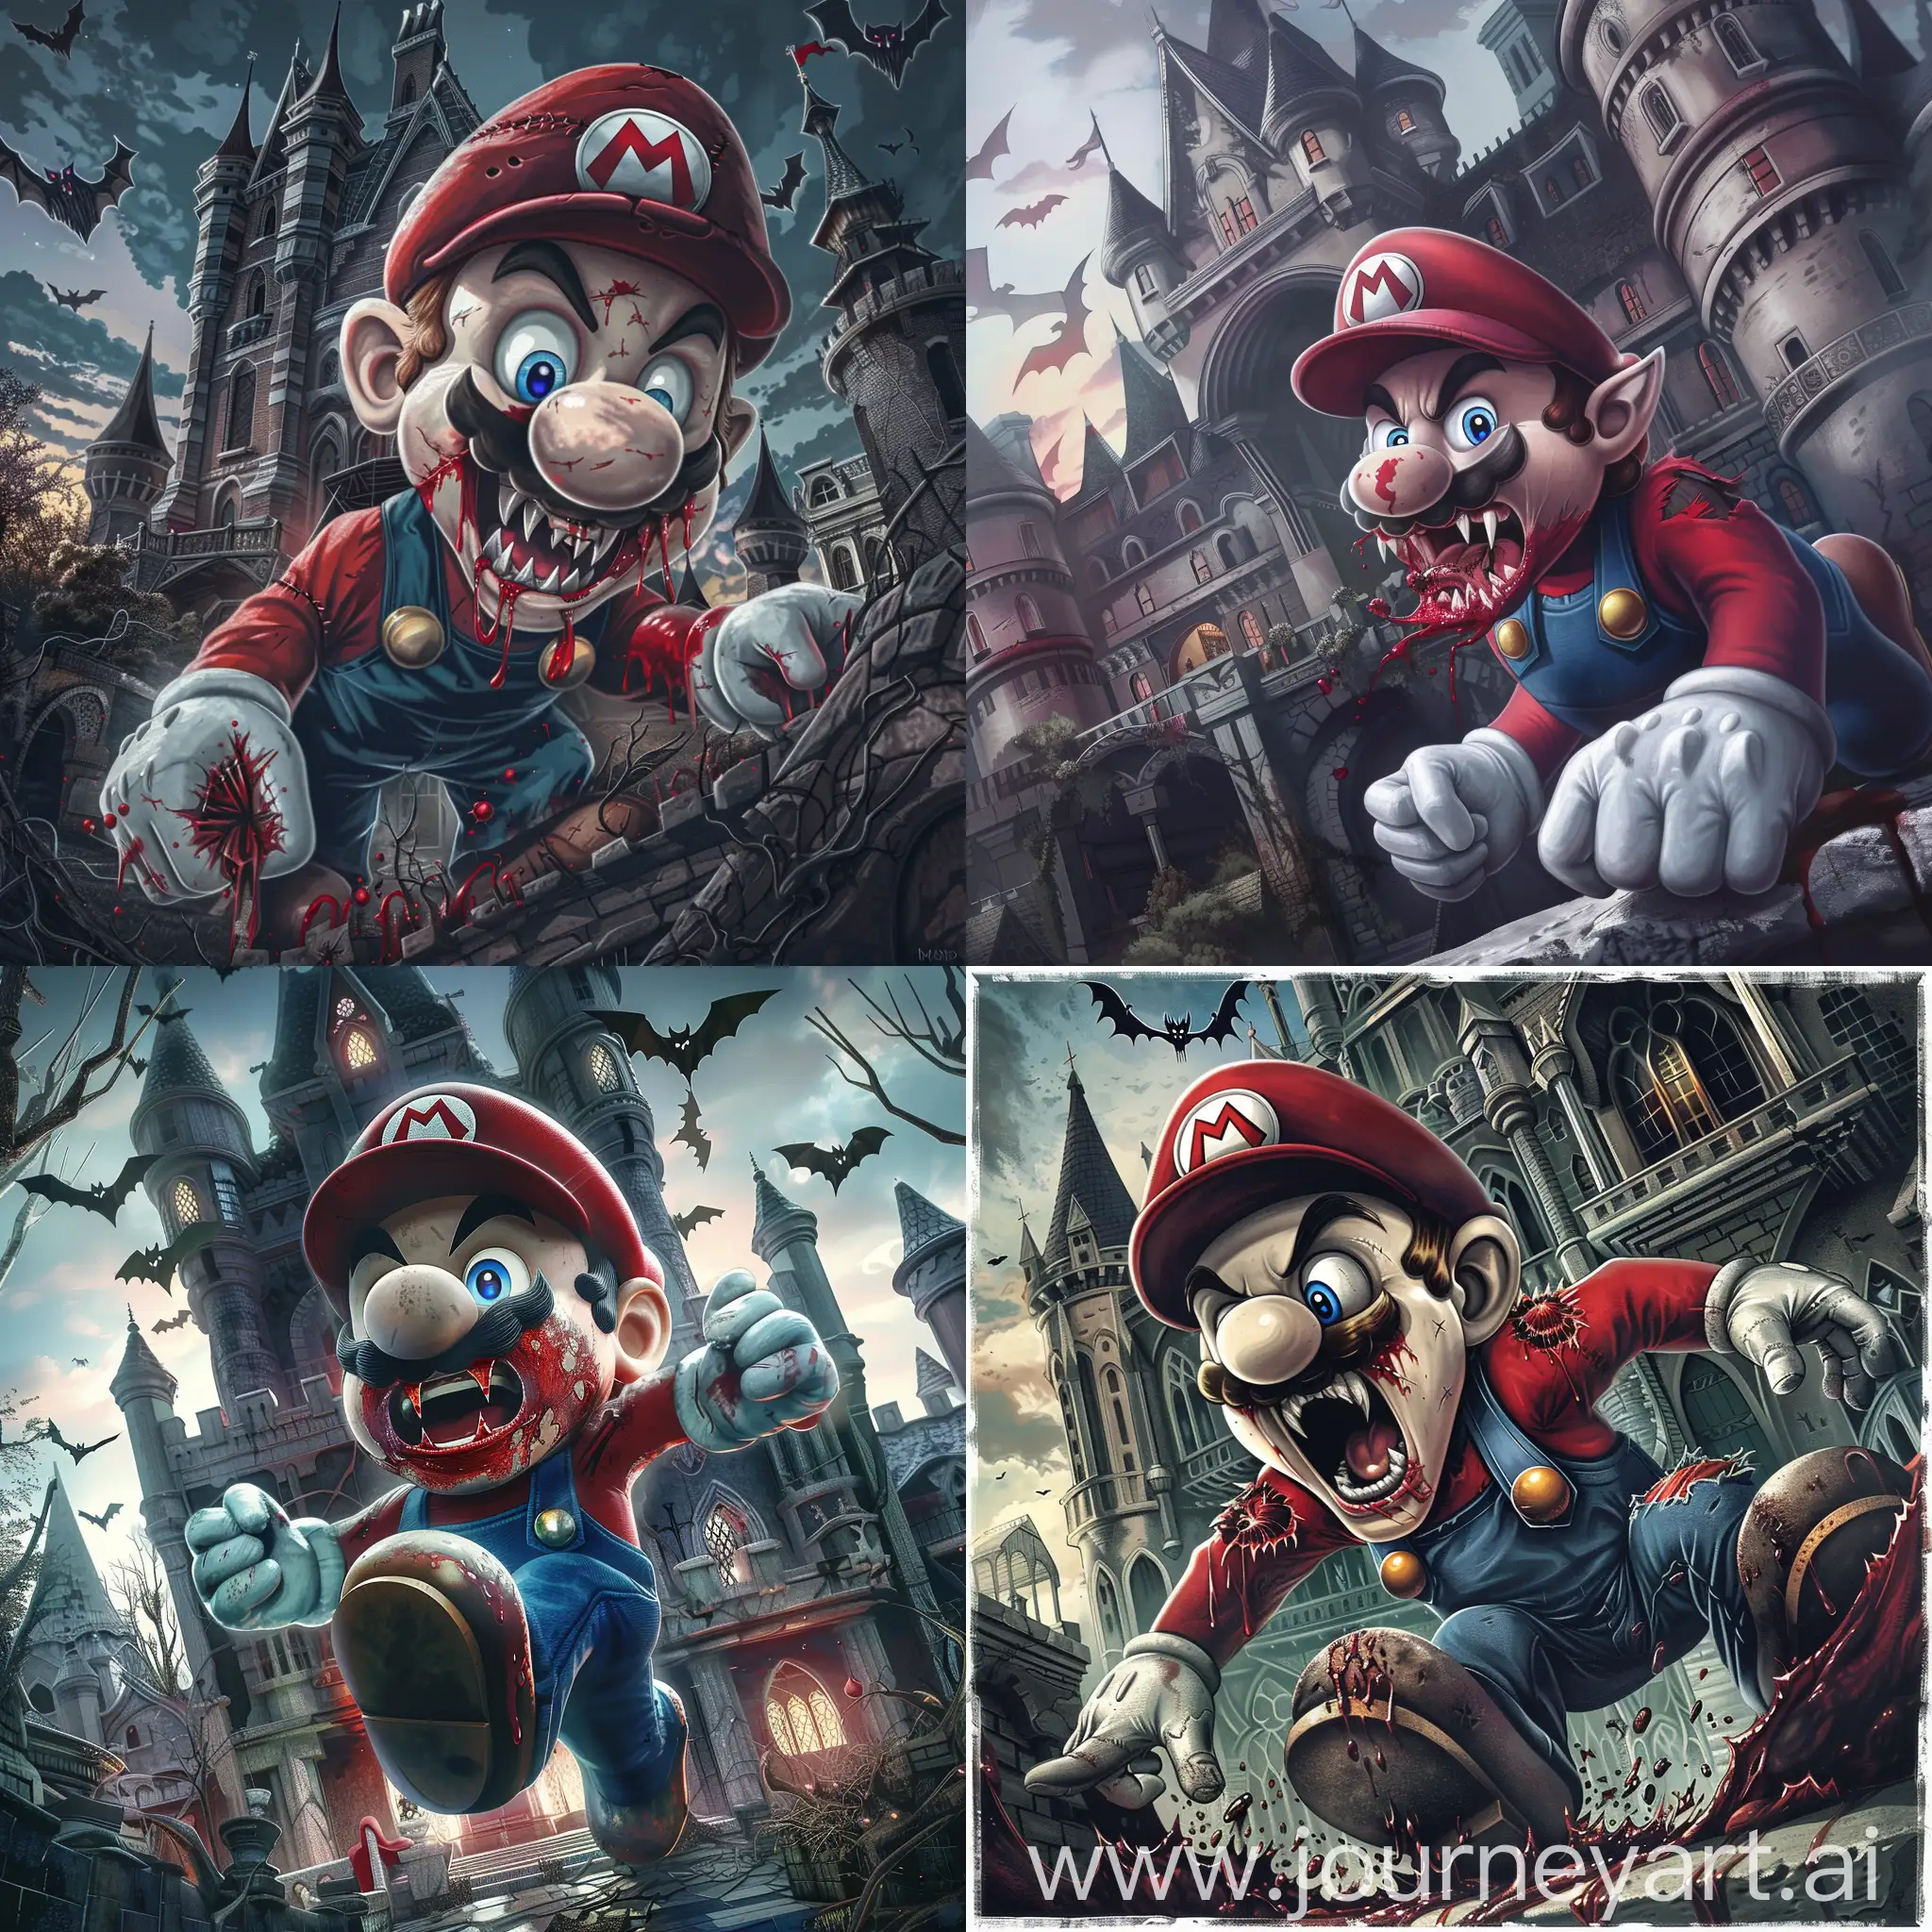 Gothic-Castle-Scene-Super-Mario-Transformed-into-a-Vampire